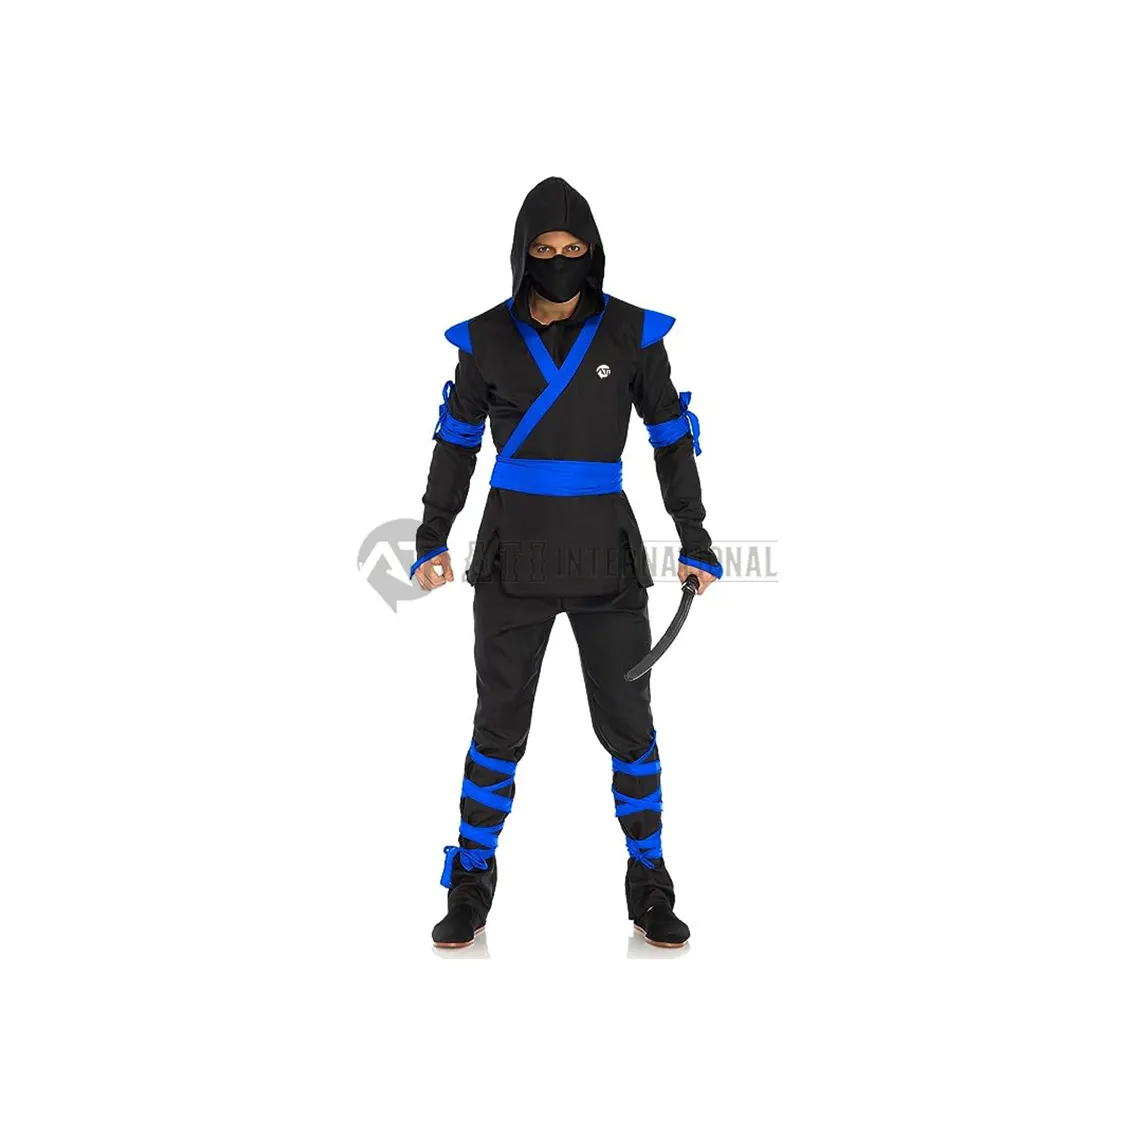 Disfraz de Ninja para hombre con camisa, pantalones, cinturón, máscara facial, capucha, uniforme de Ninja negro/azul profesional para adultos y niños